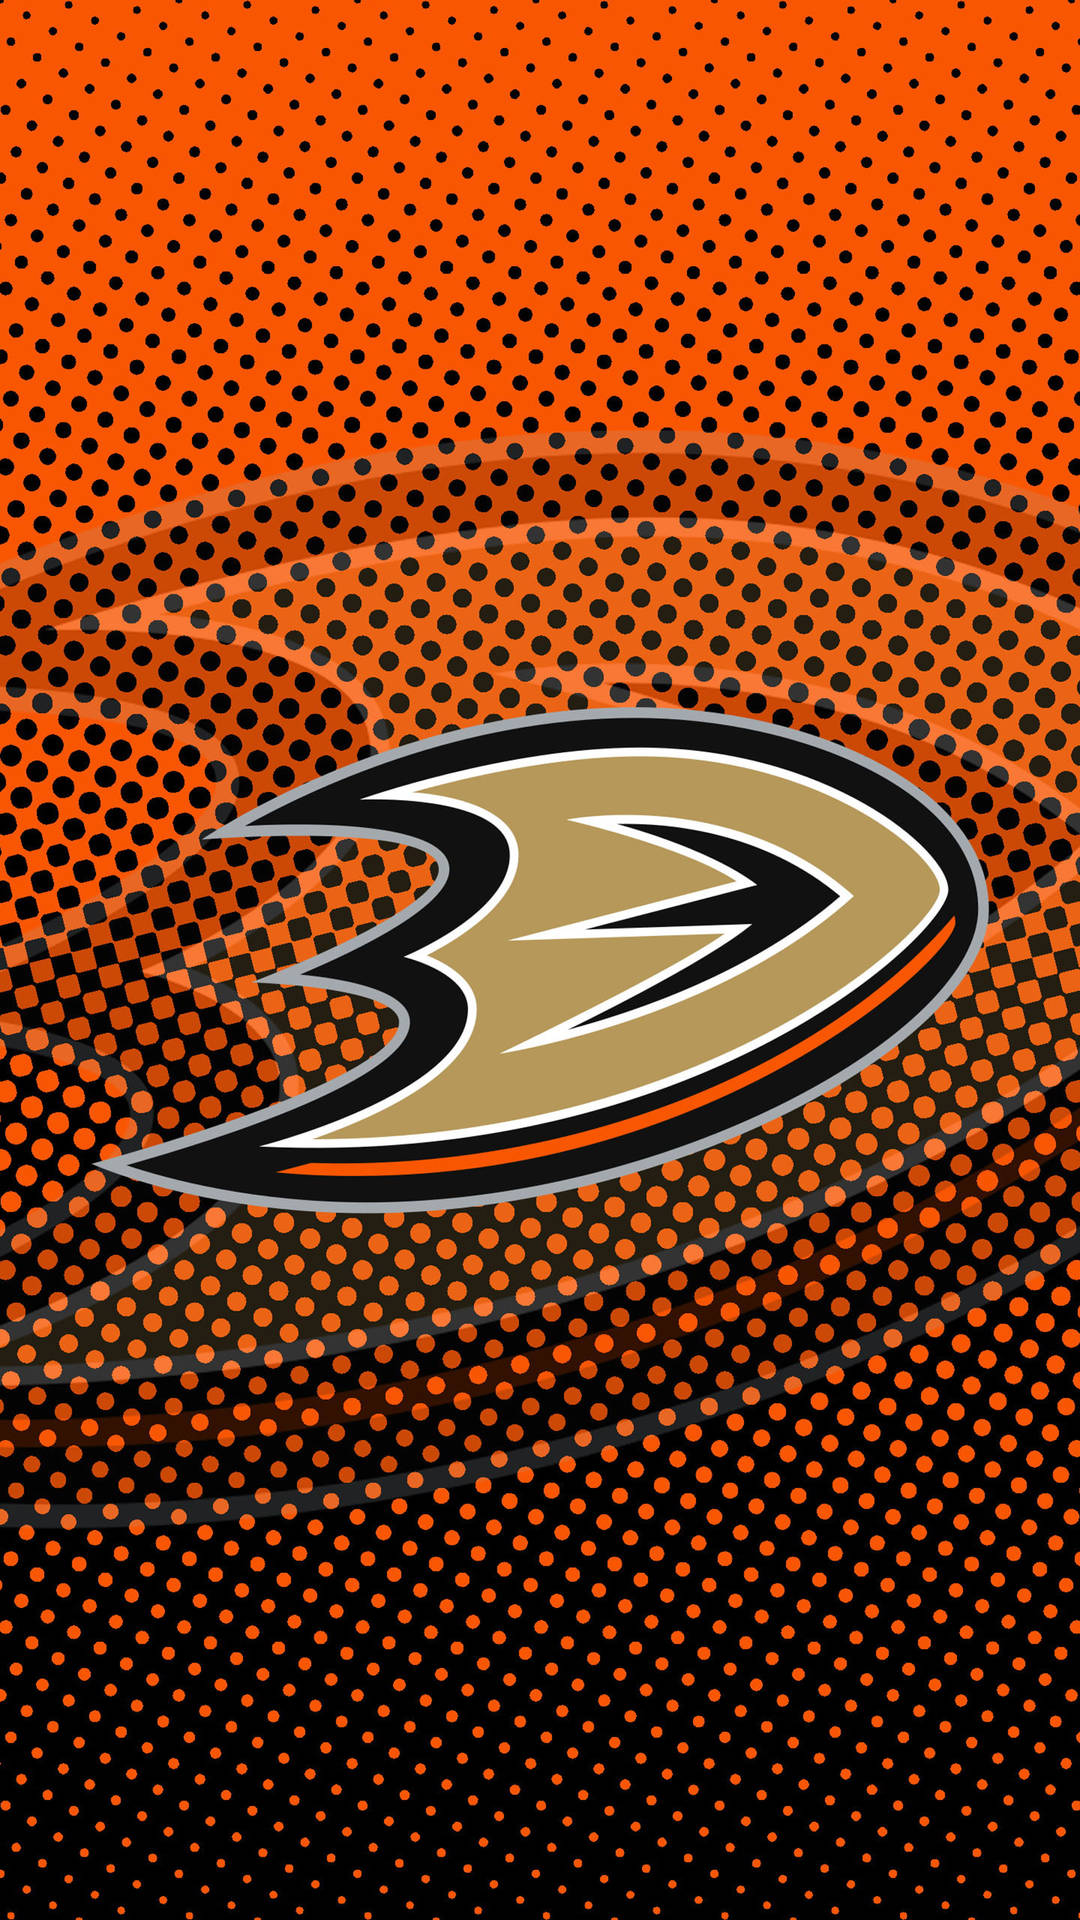 Anaheim Ducks Dotted Design Background